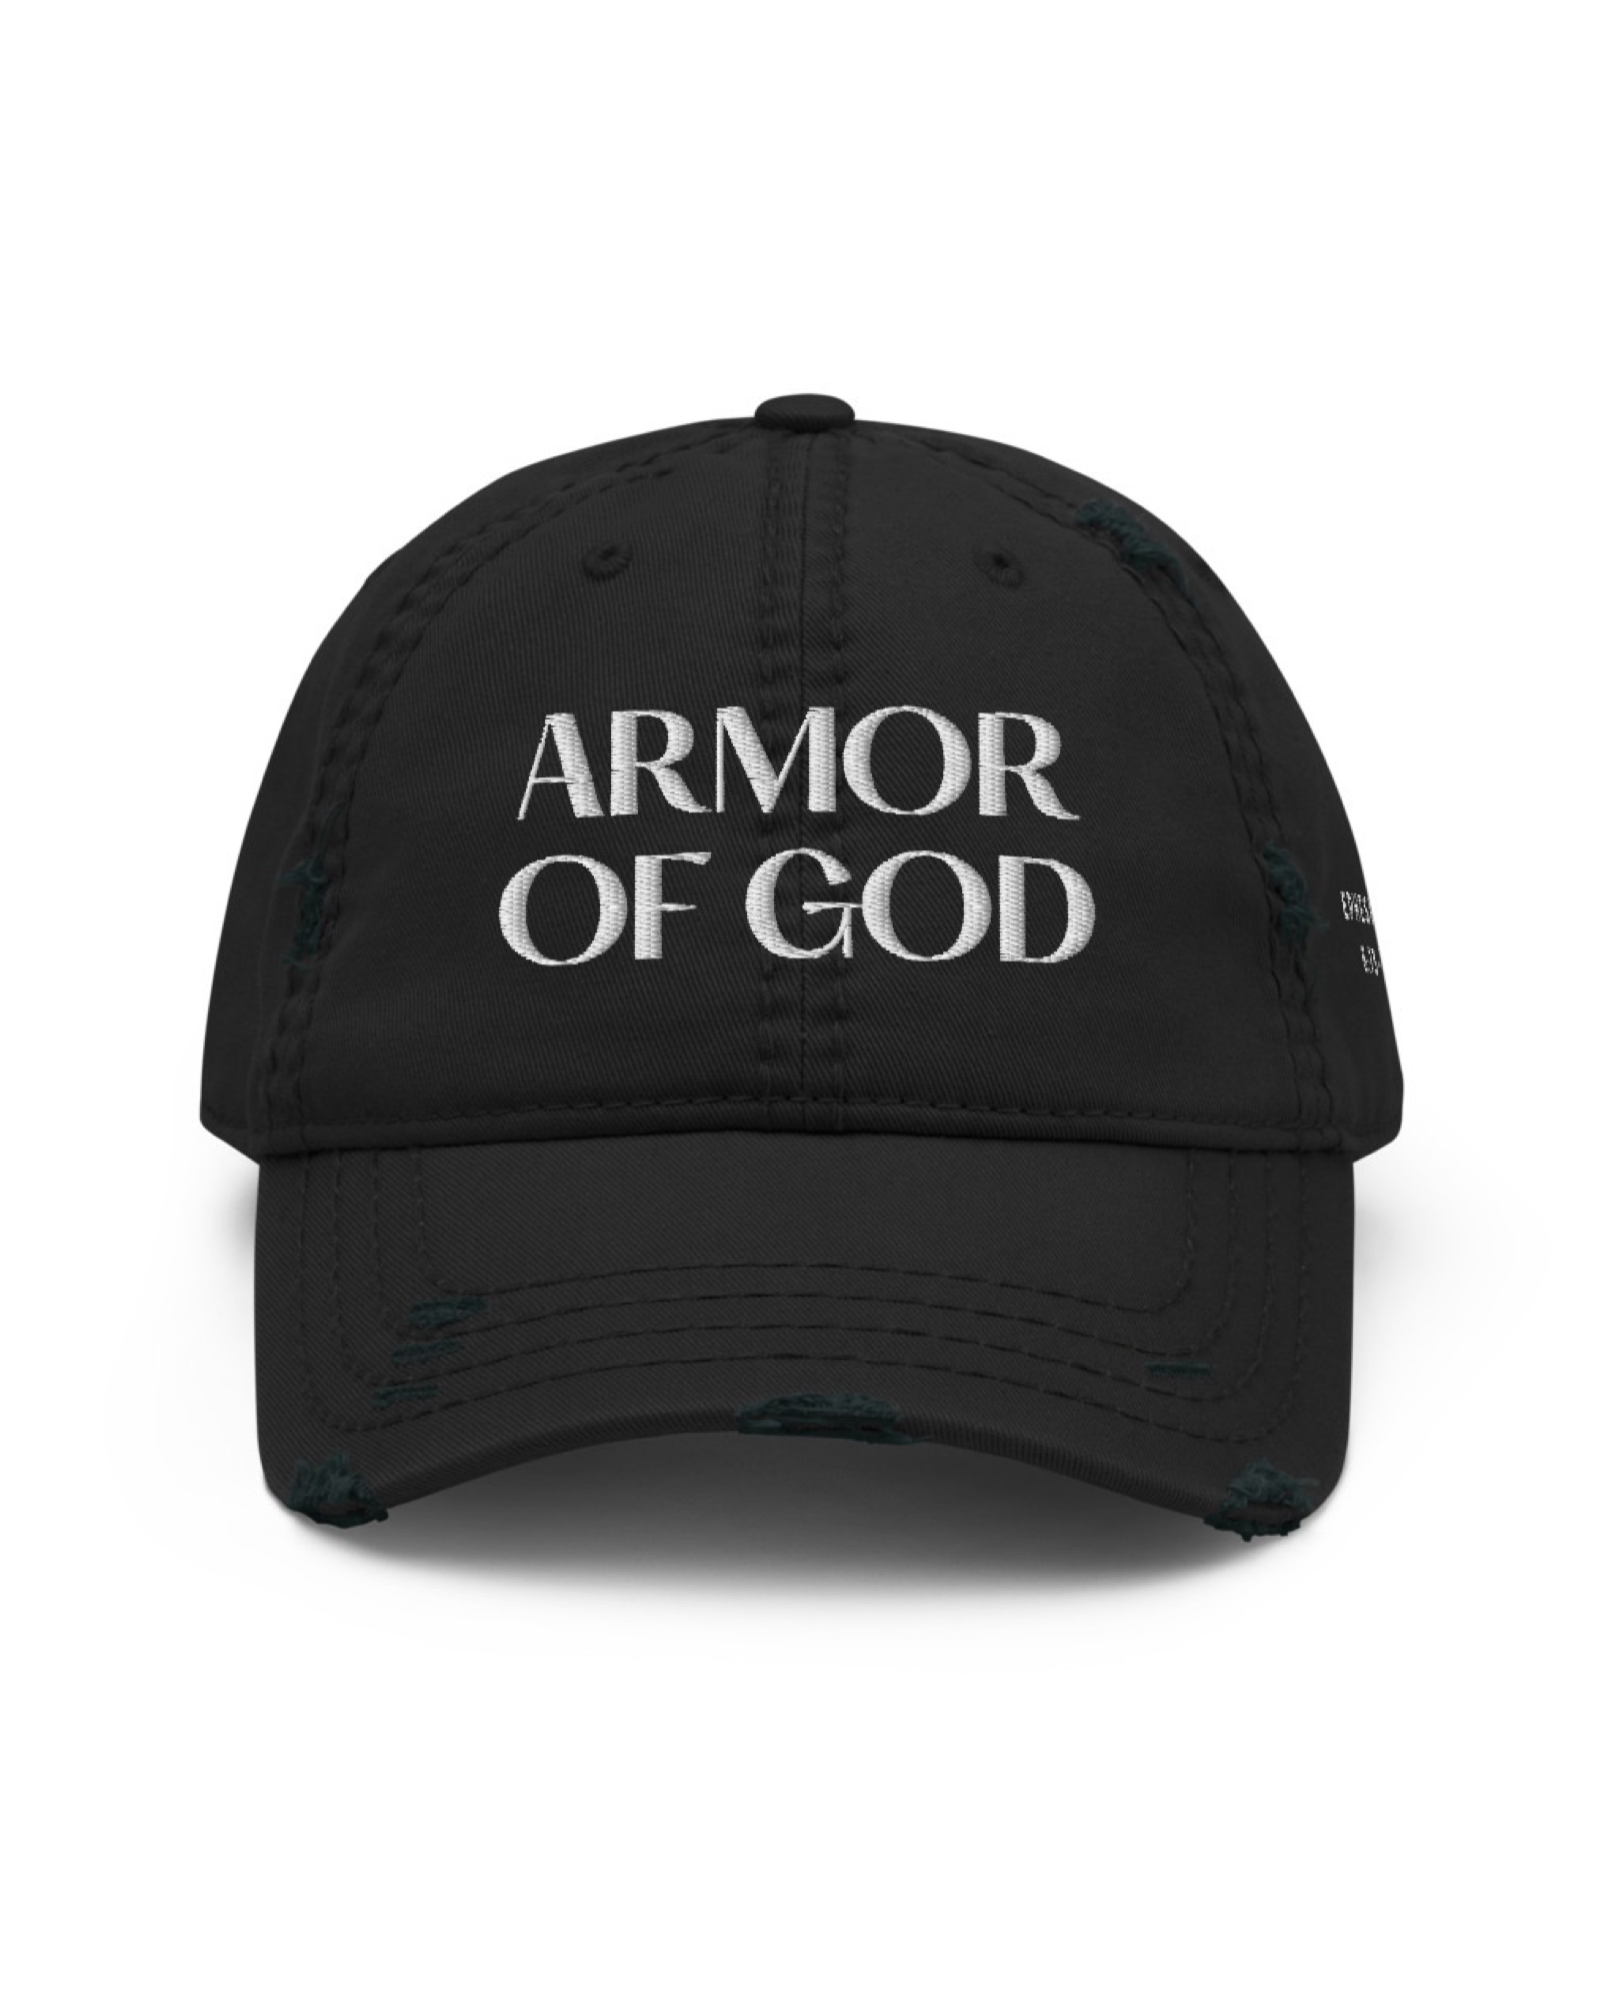 Armor of God - Christian Hat